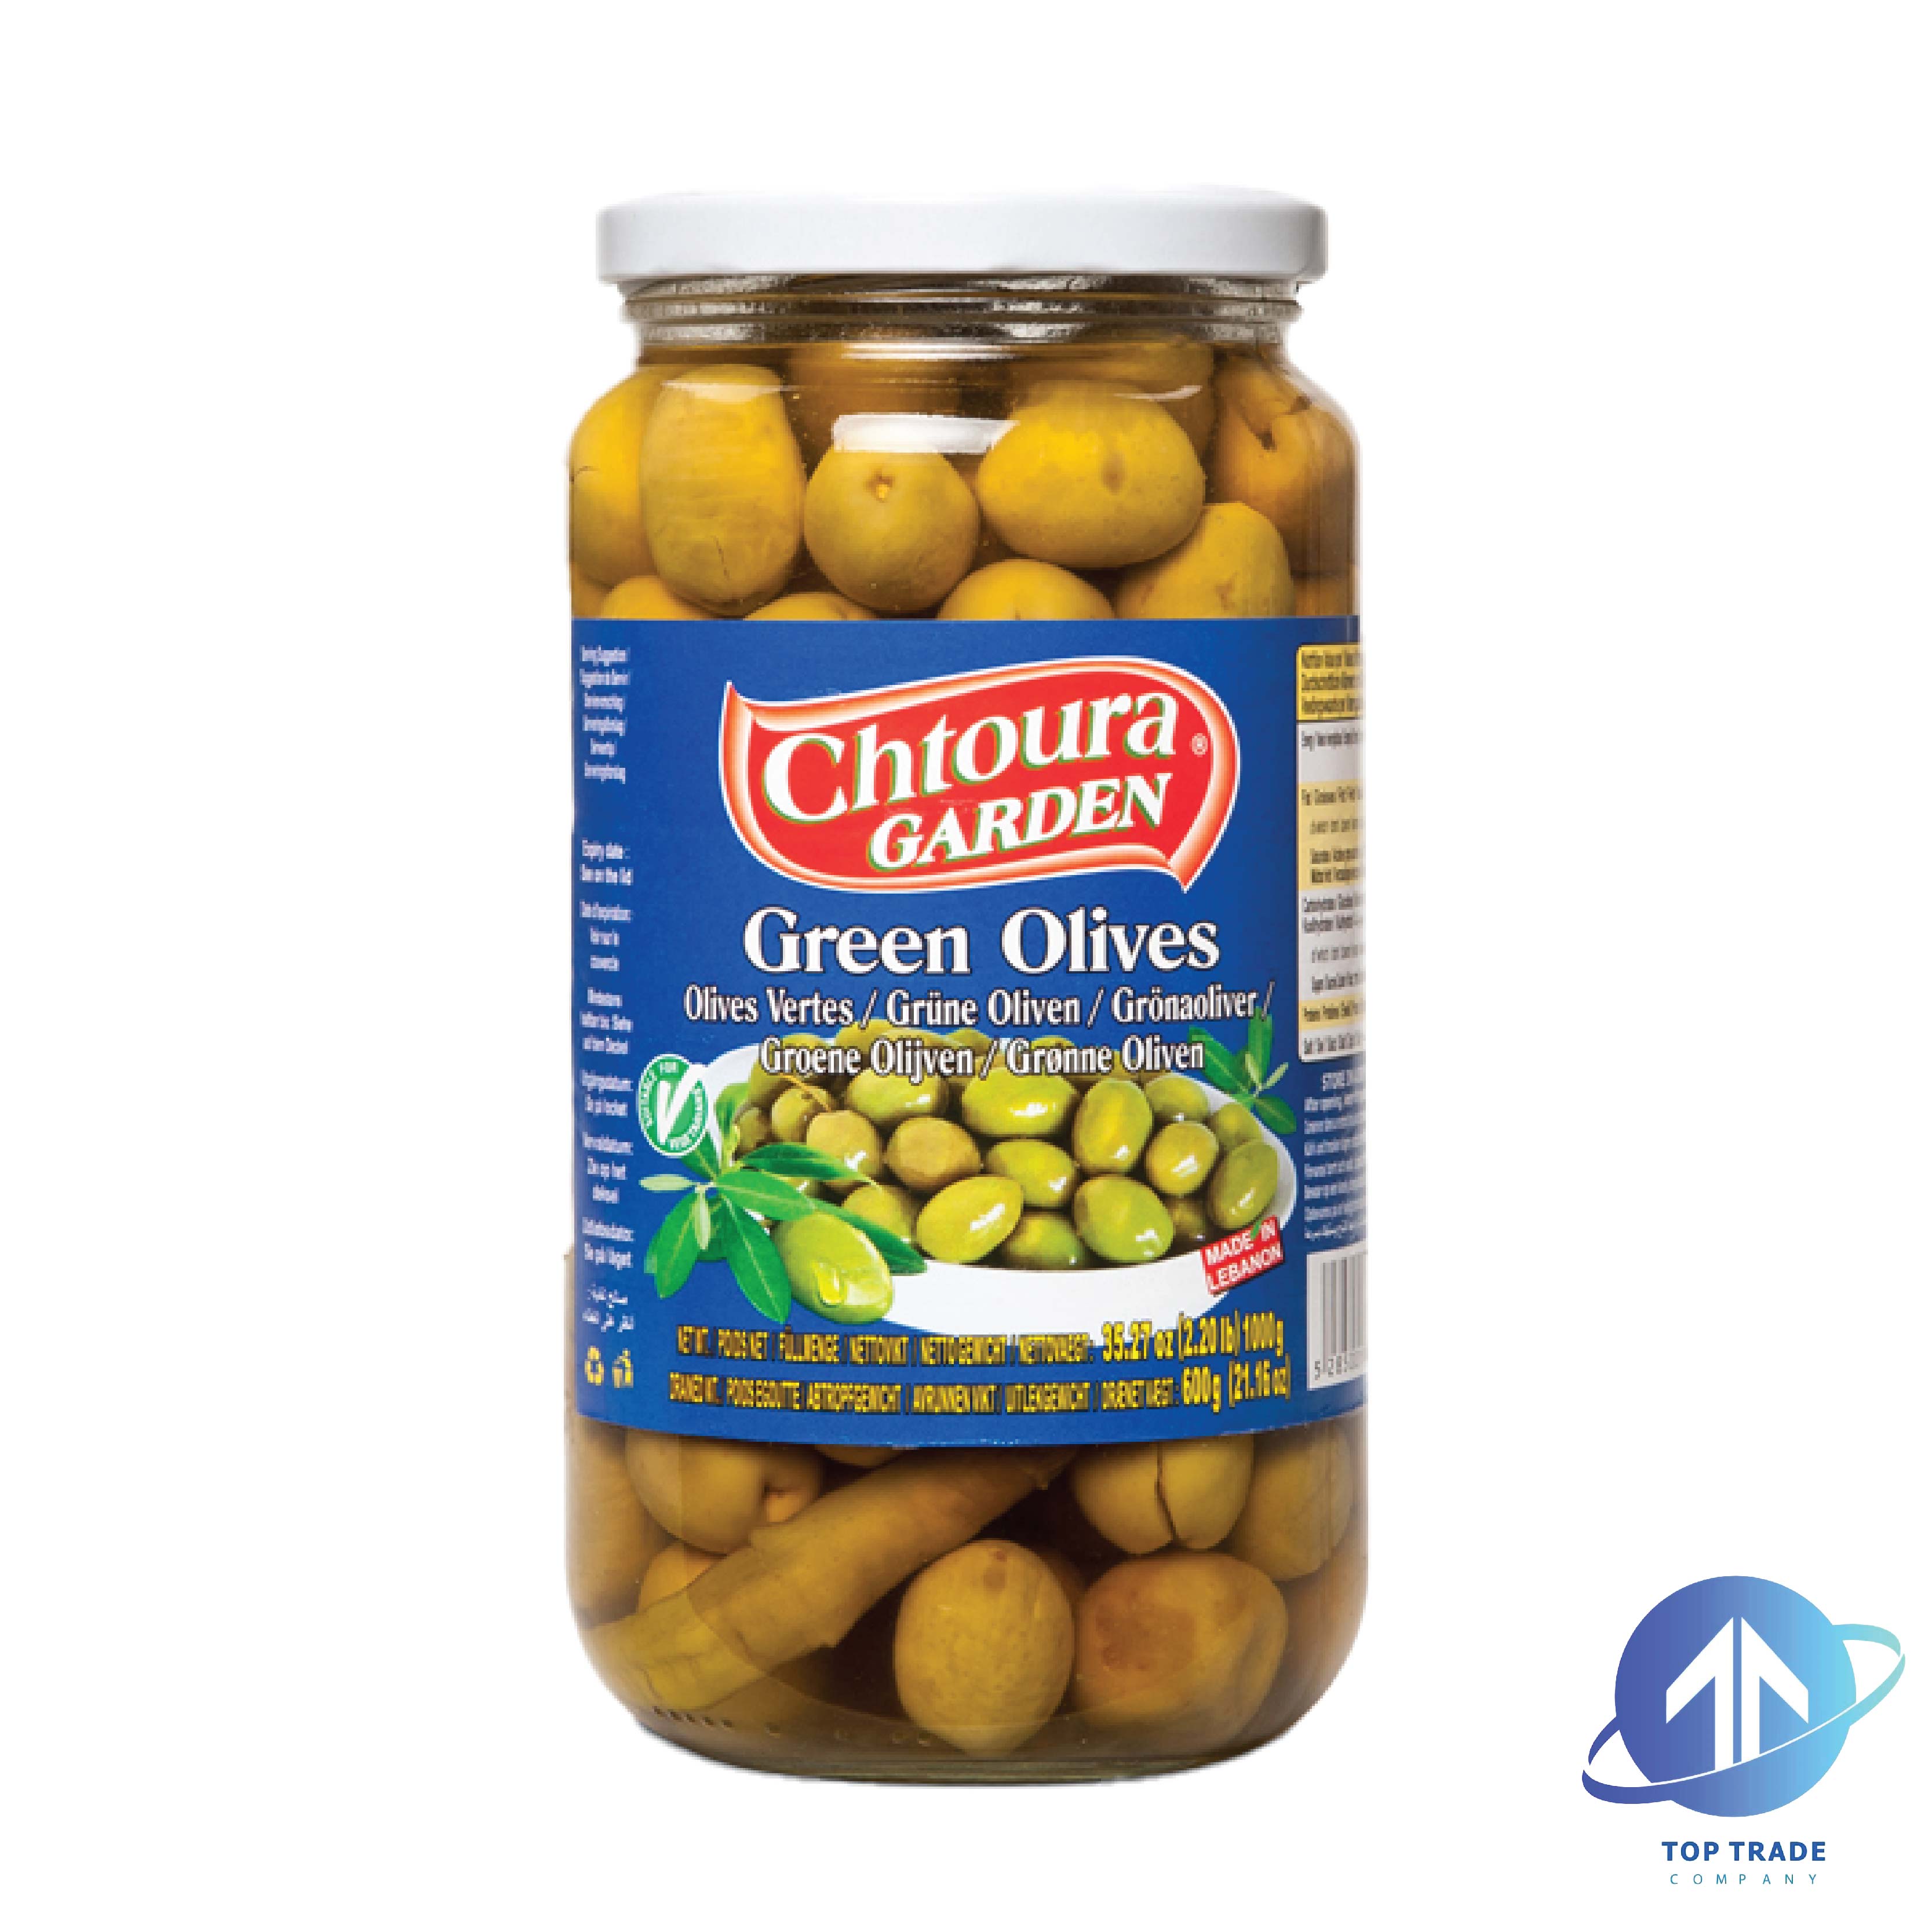 Chtoura garden Green Olives 1KG